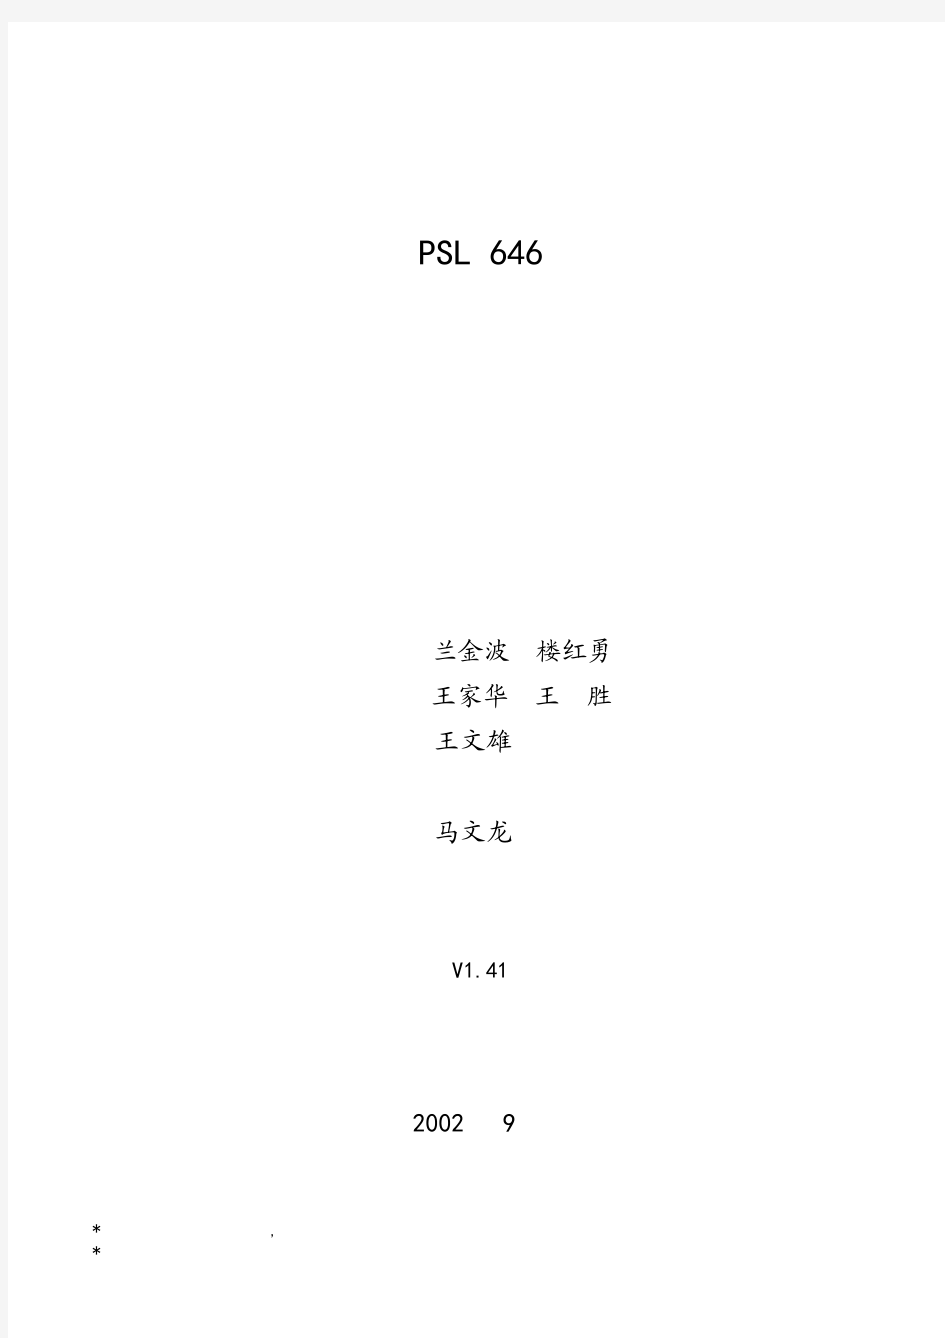 PSL646技术说明书